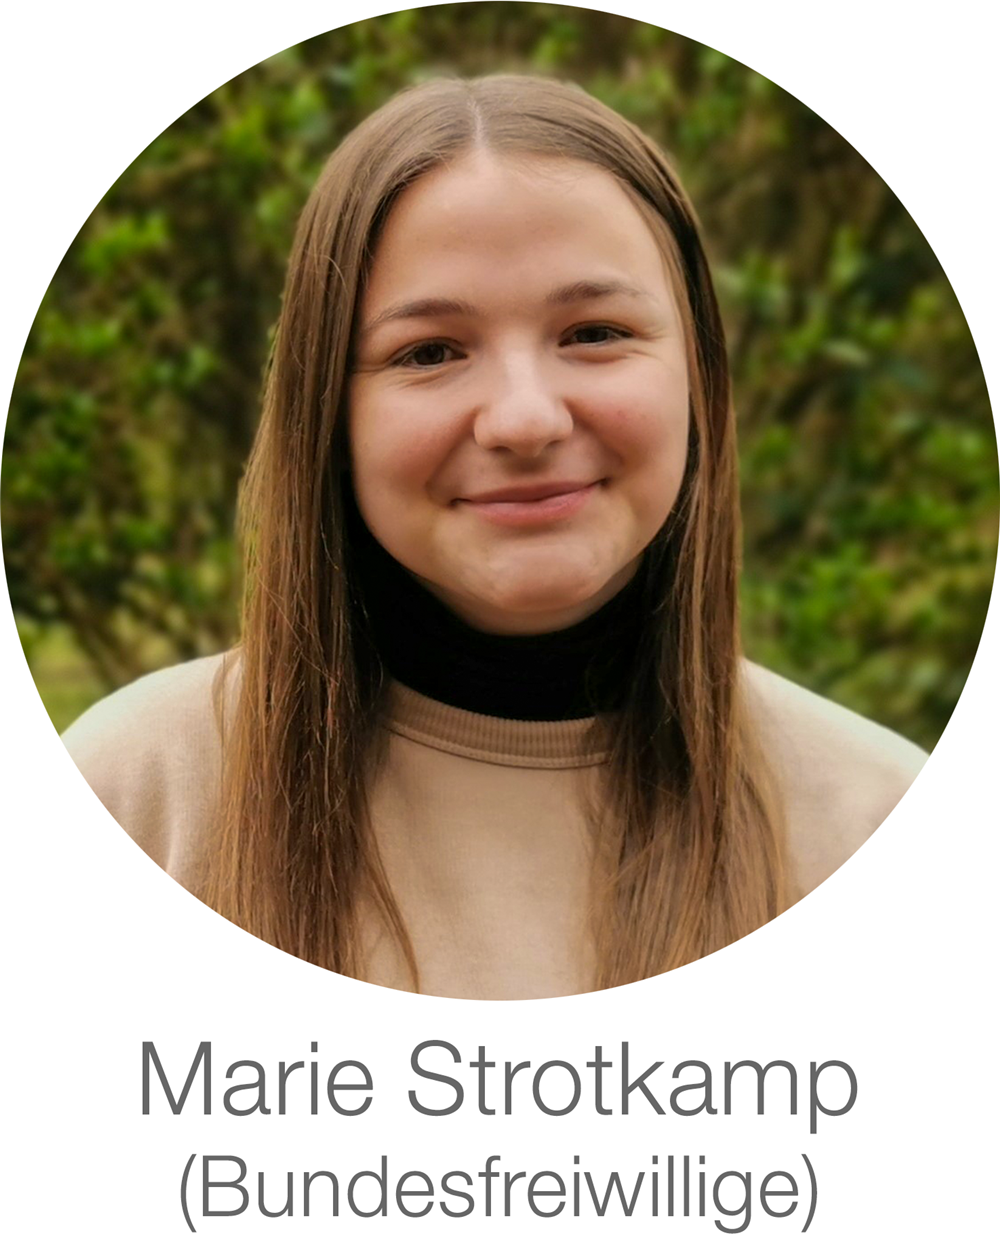 Marie Strotkamp